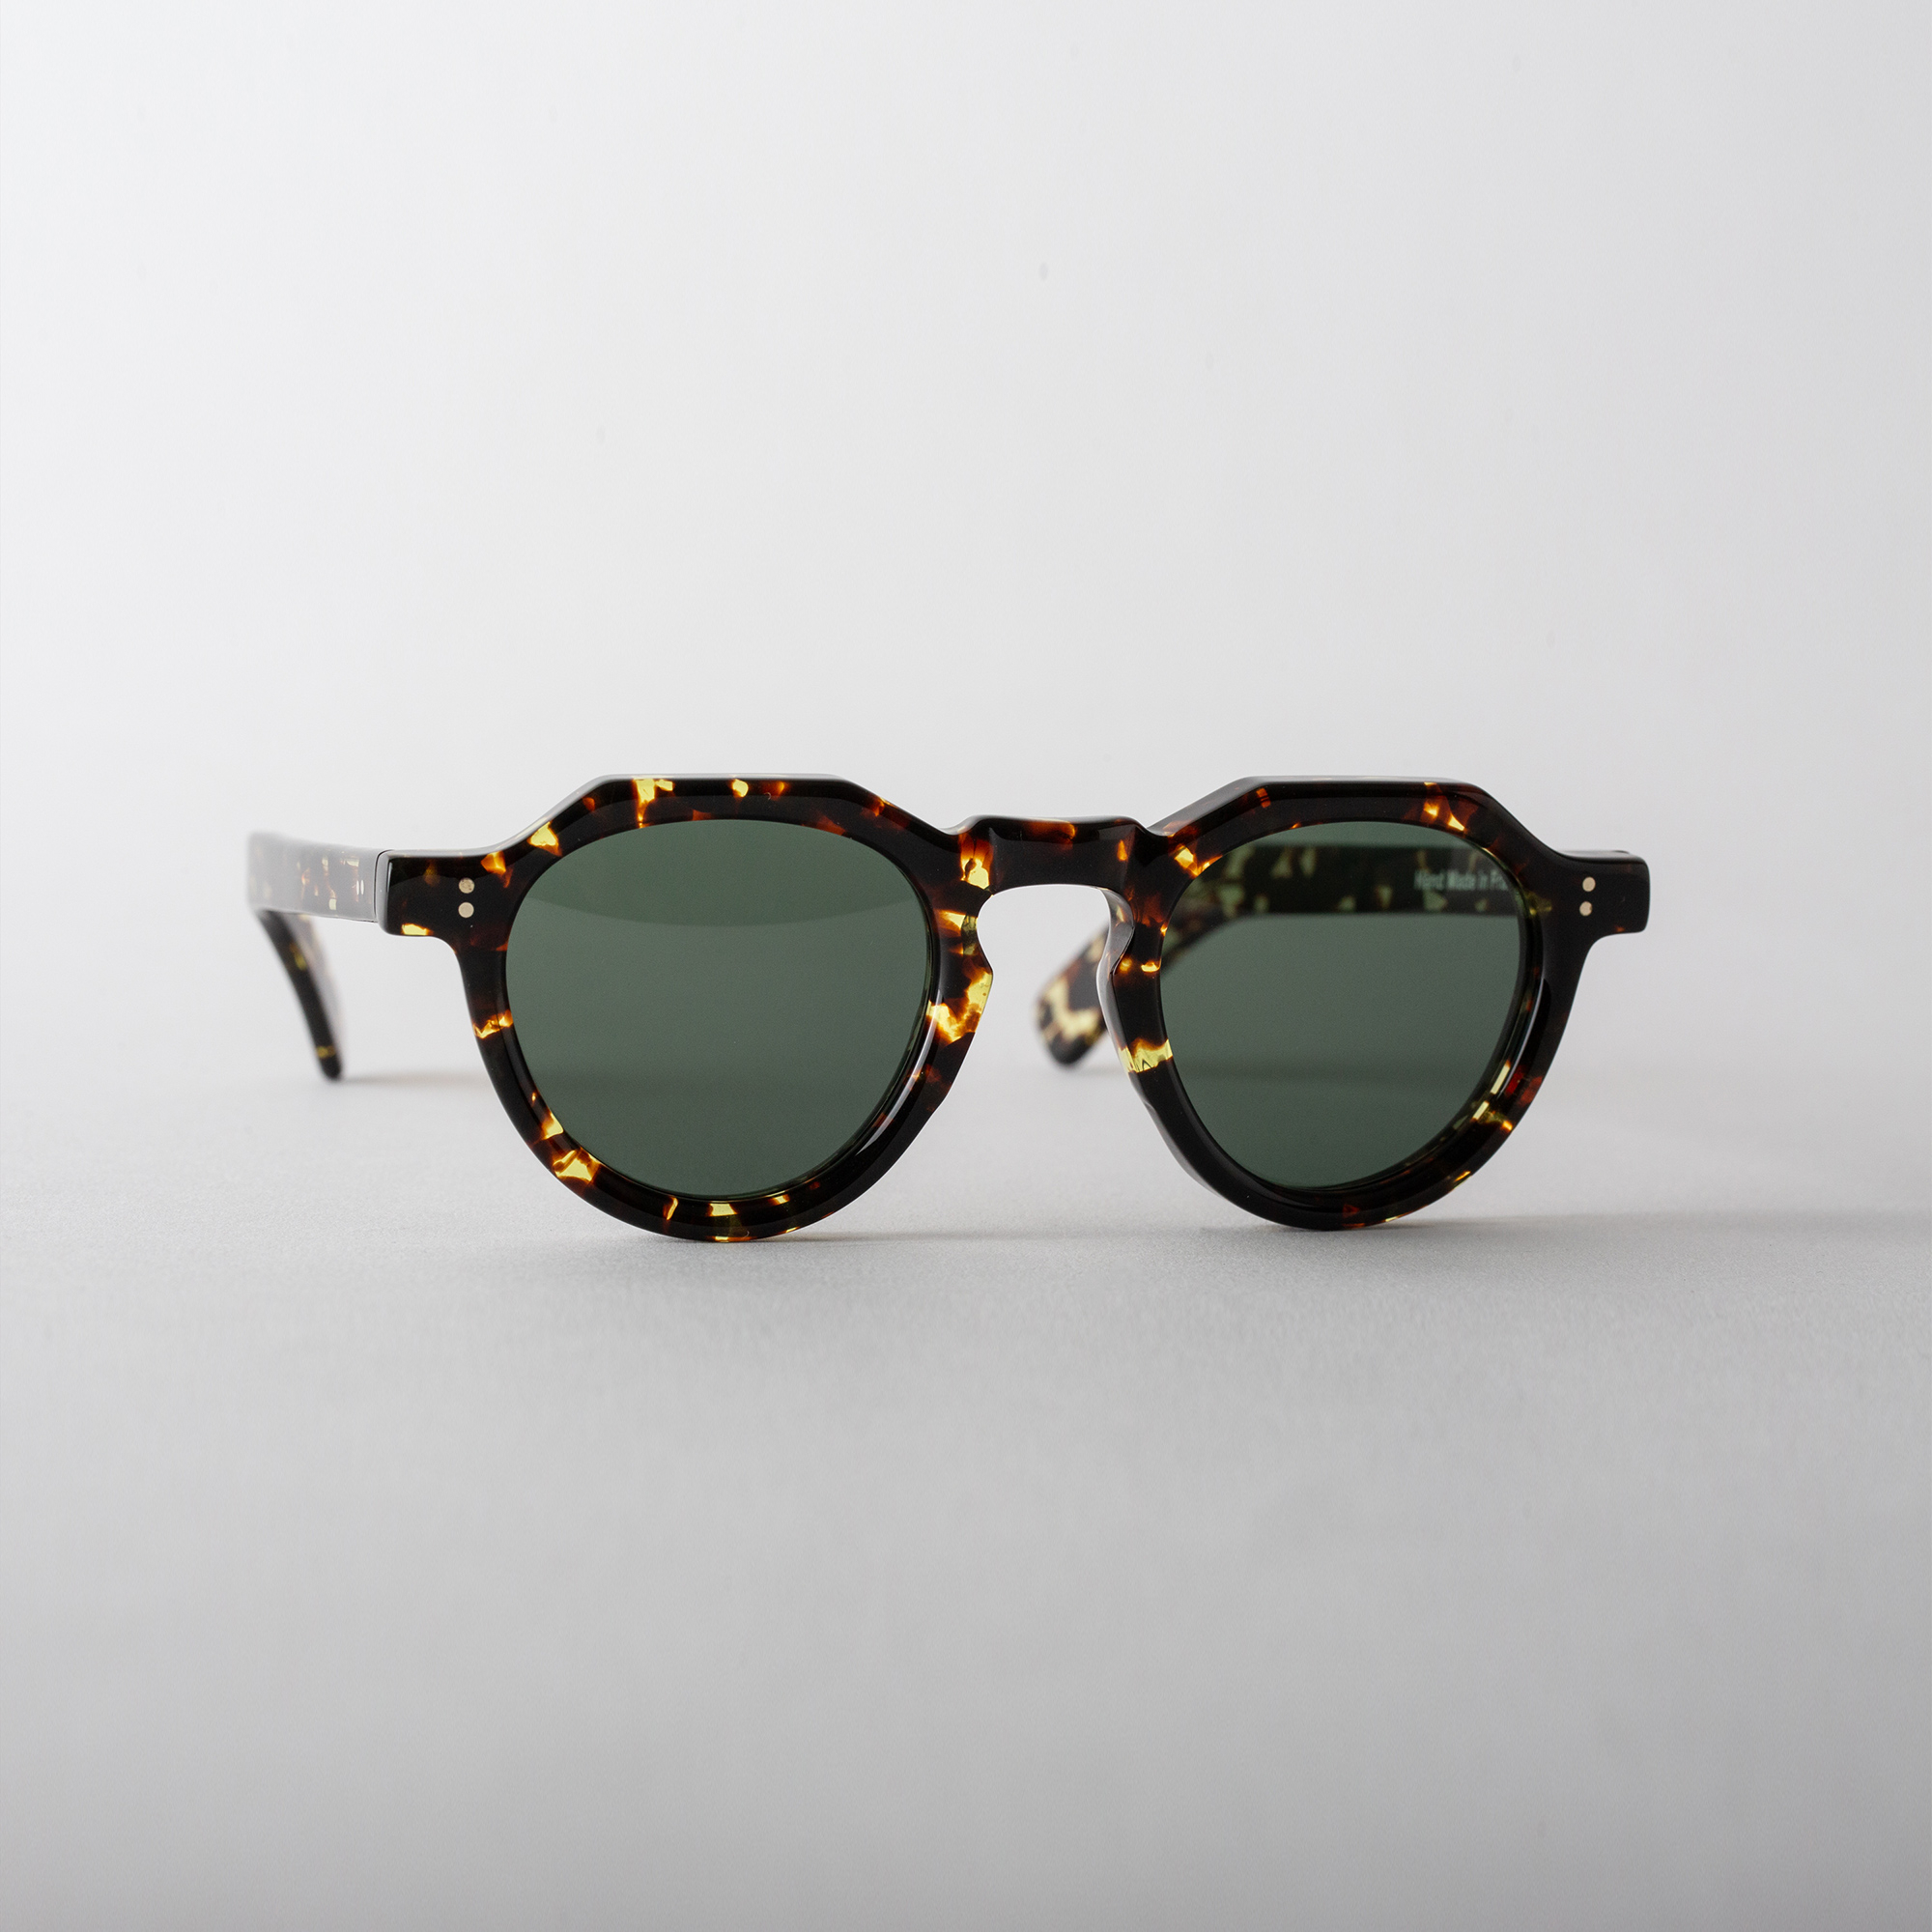 Sunglasses MOD.01 in Café color by Arpenteur